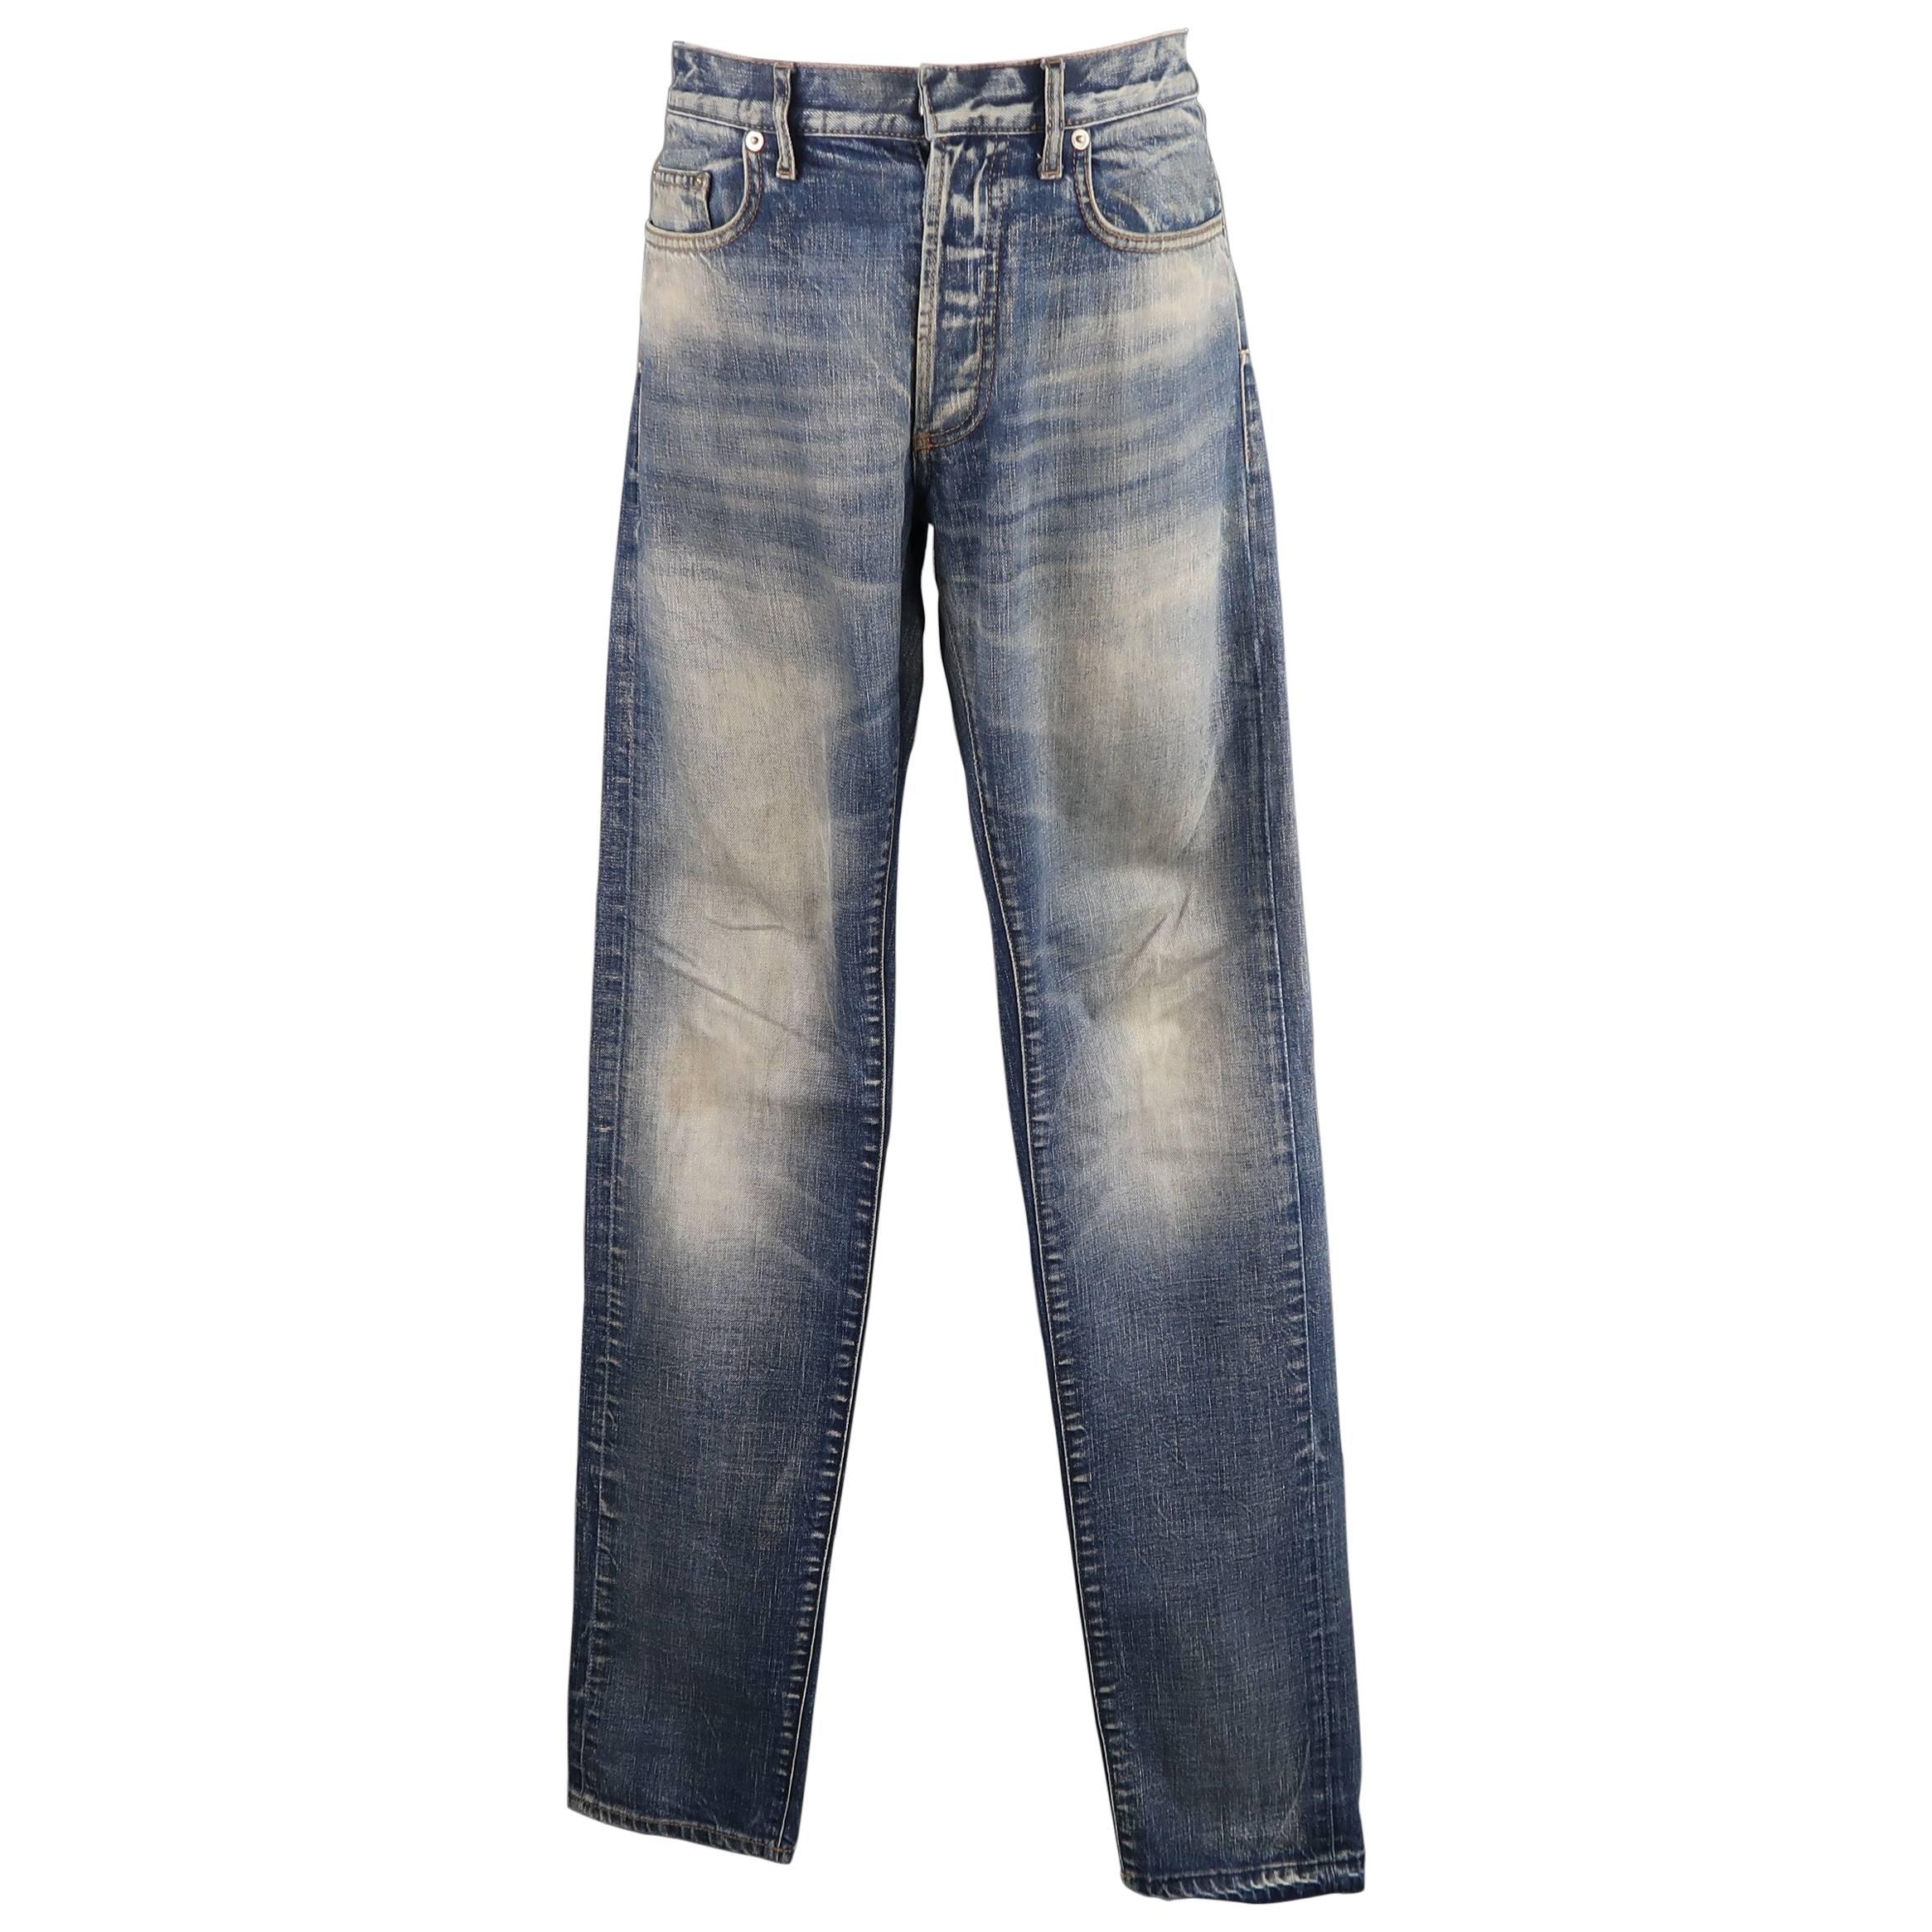 Dior Denim Jeans - 5 For Sale on 1stDibs | dior jeans for men 